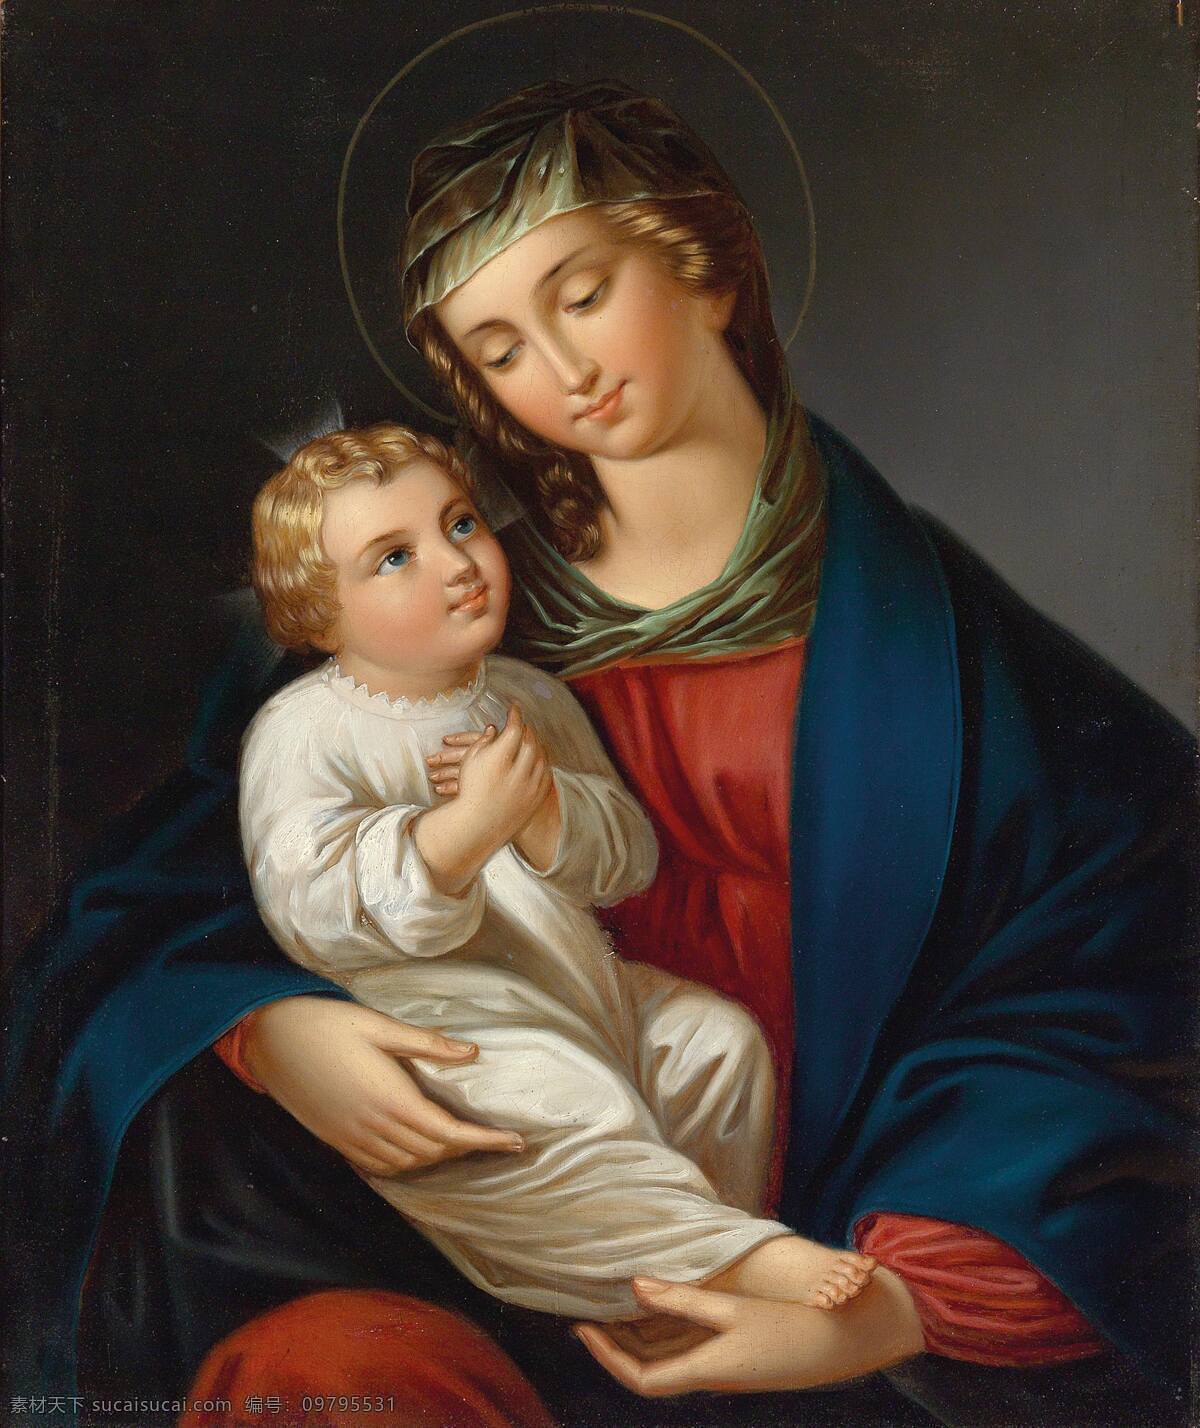 圣母抱耶稣 圣母抱子 圣母玛利亚 耶稣 天主教 人物图库 生活人物